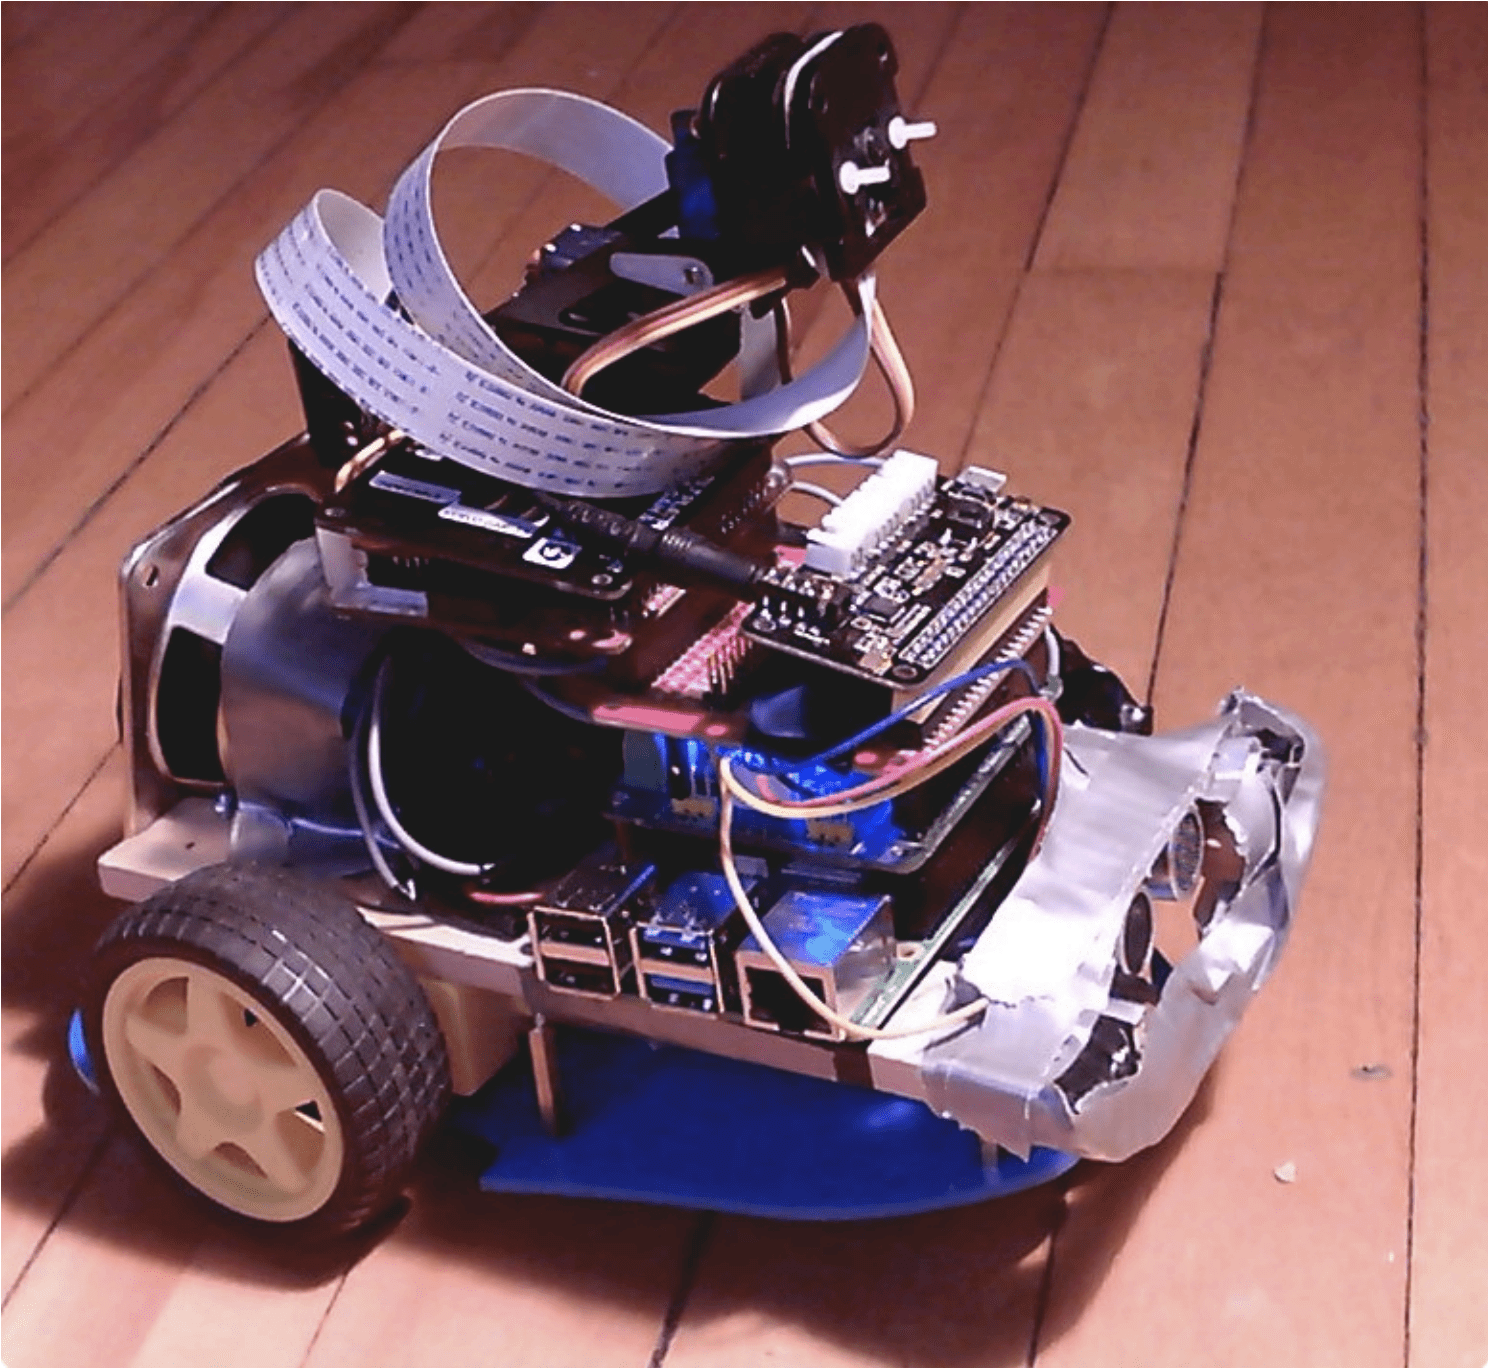 Nandu's home made robot